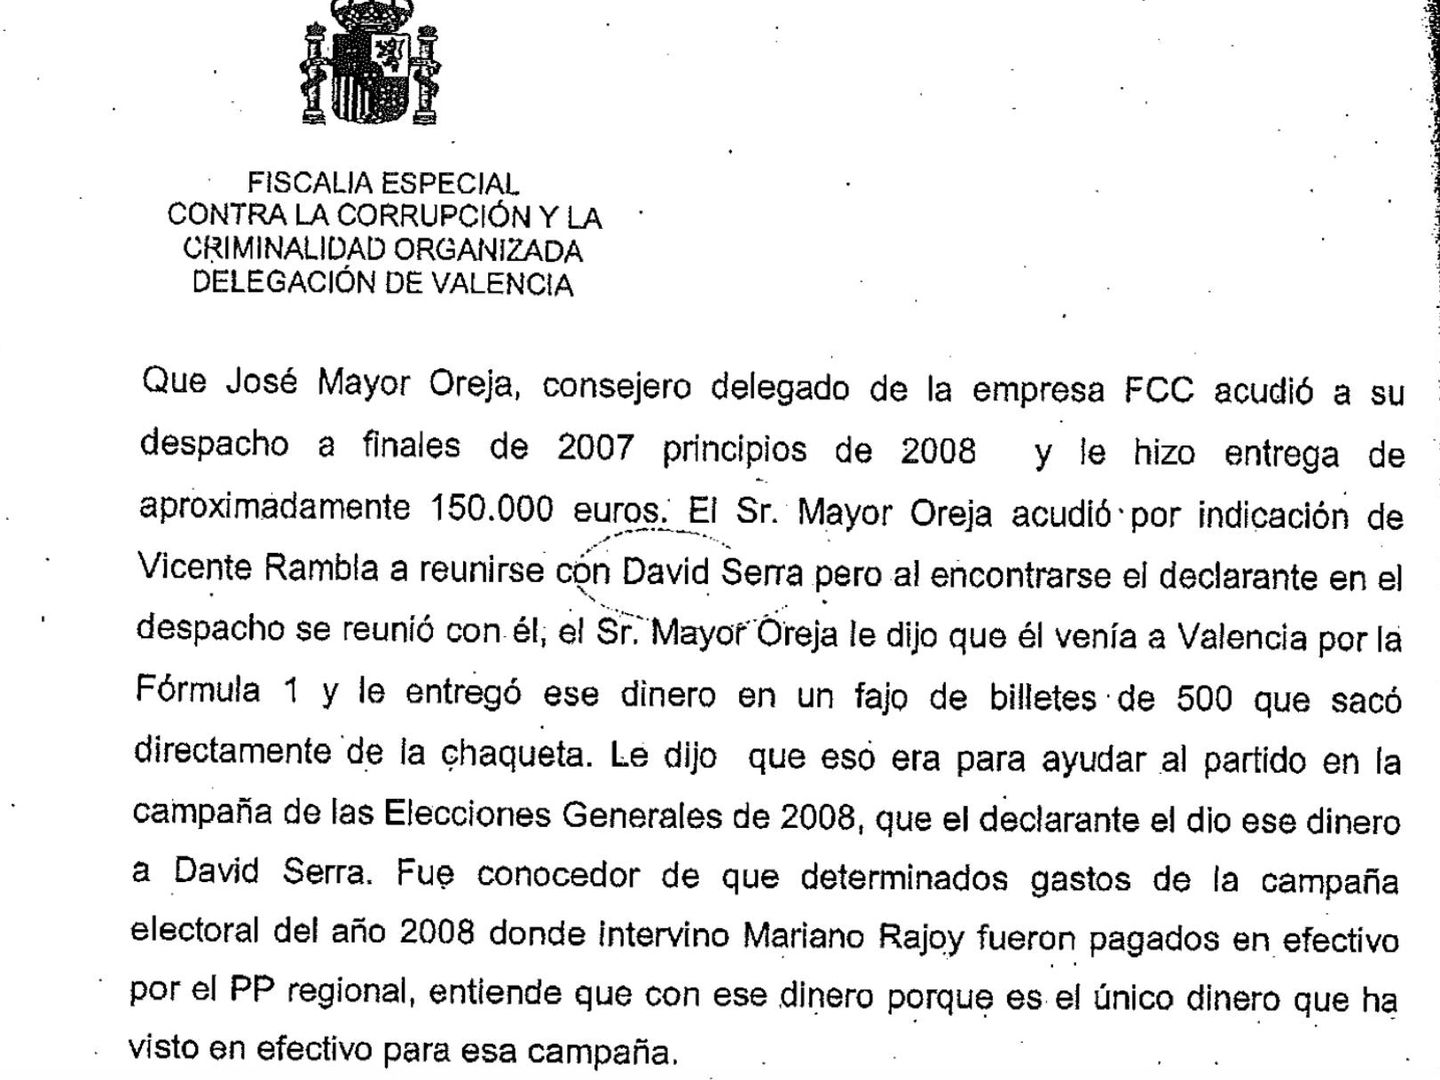 La declaración de Ricardo Costa ante la Fiscalía Anticorrupción en la que señala a José Mayor Oreja.